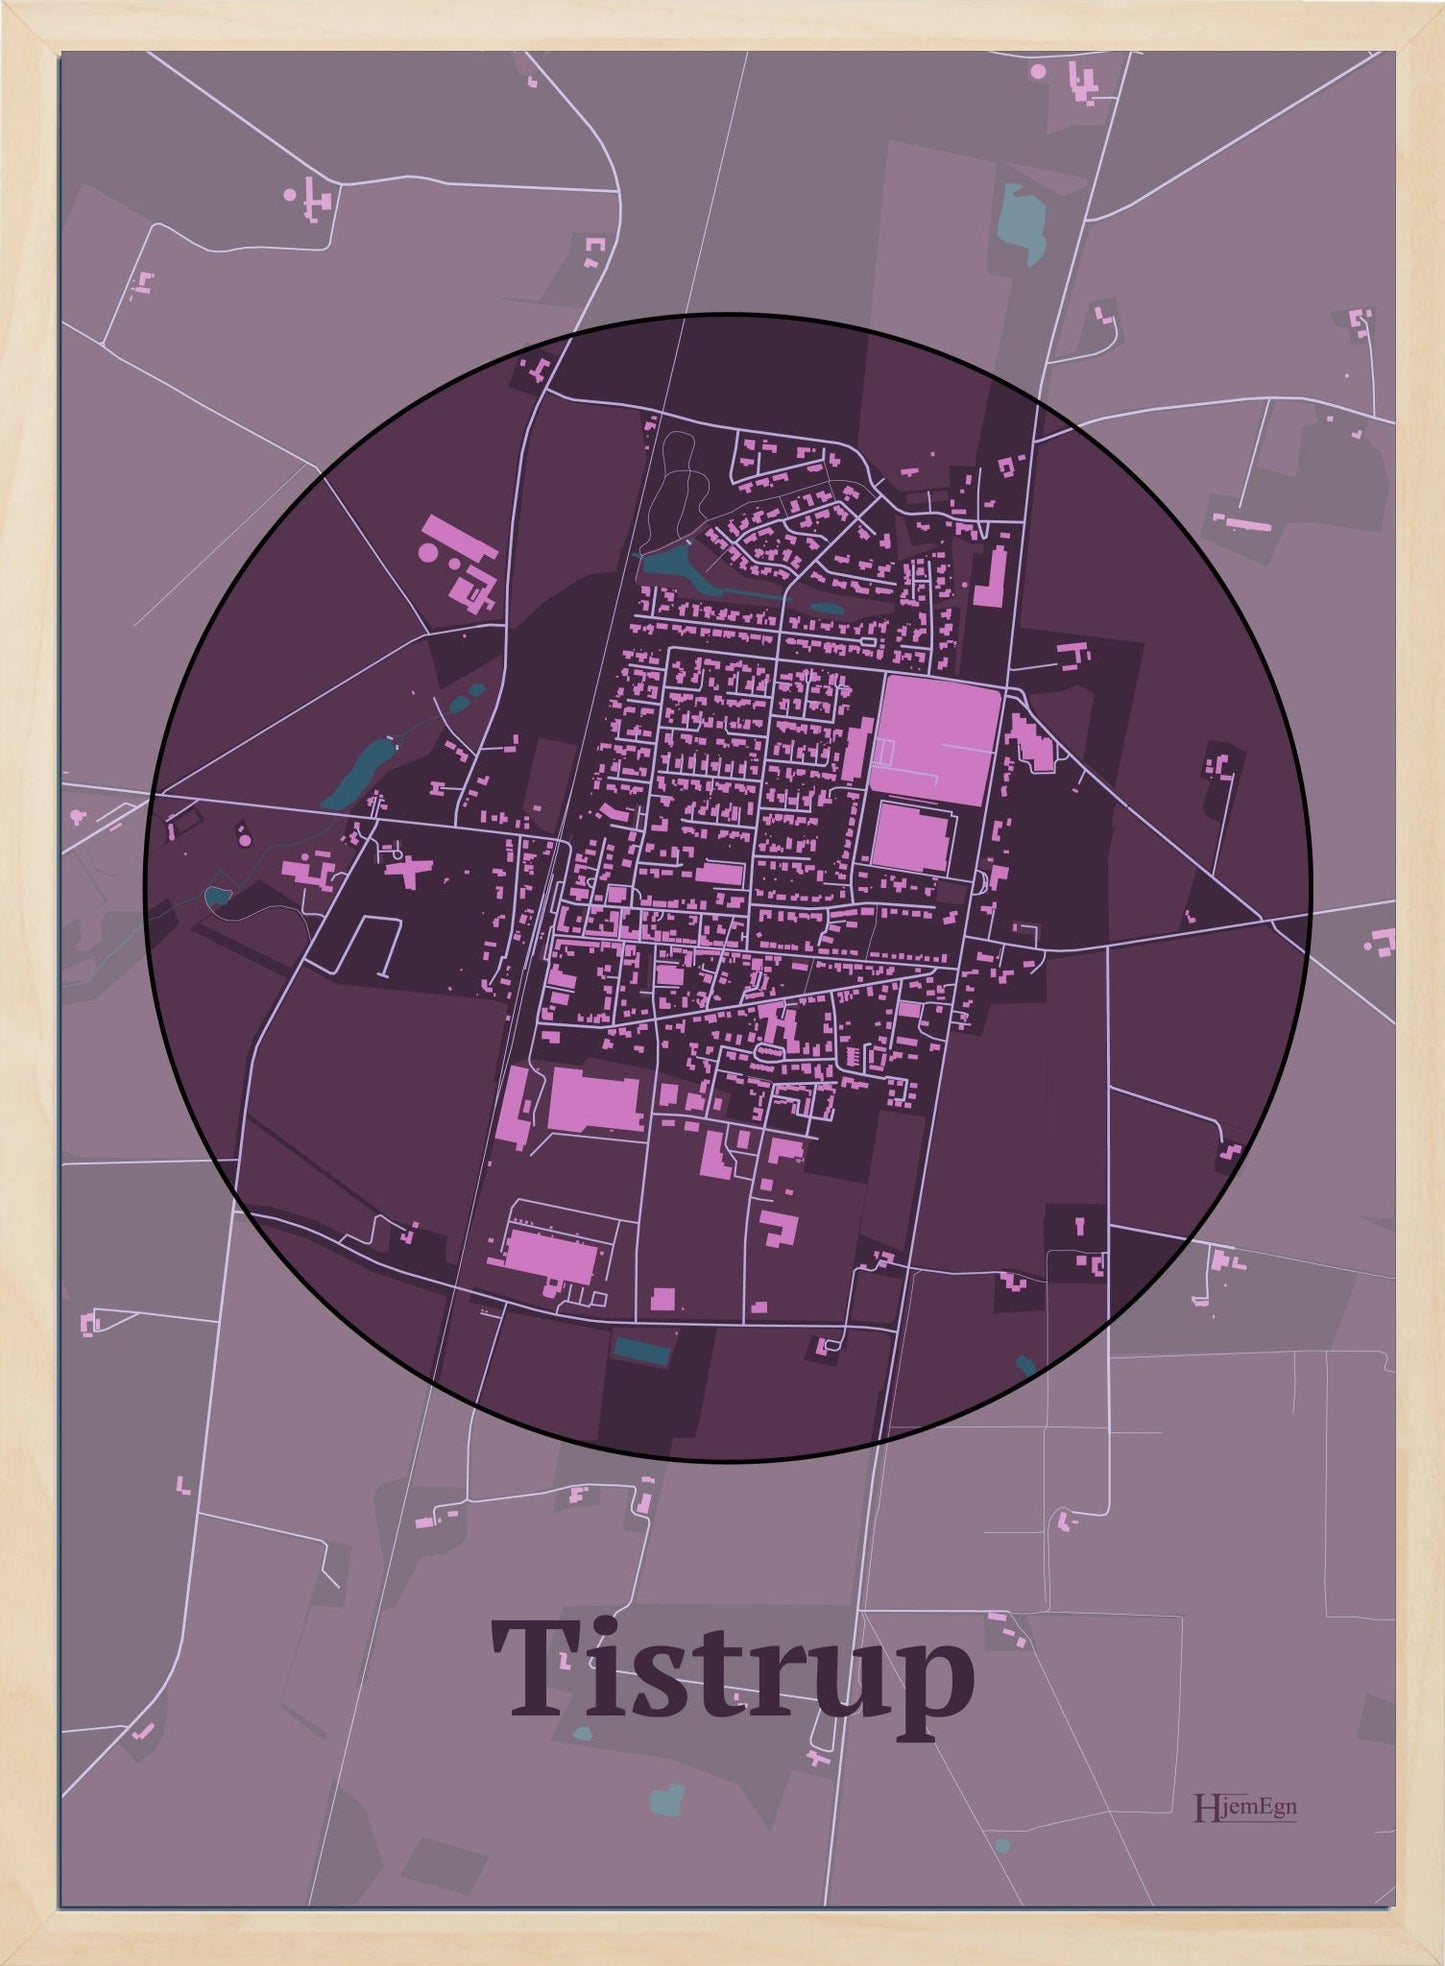 Tistrup plakat i farve mørk rød og HjemEgn.dk design centrum. Design bykort for Tistrup